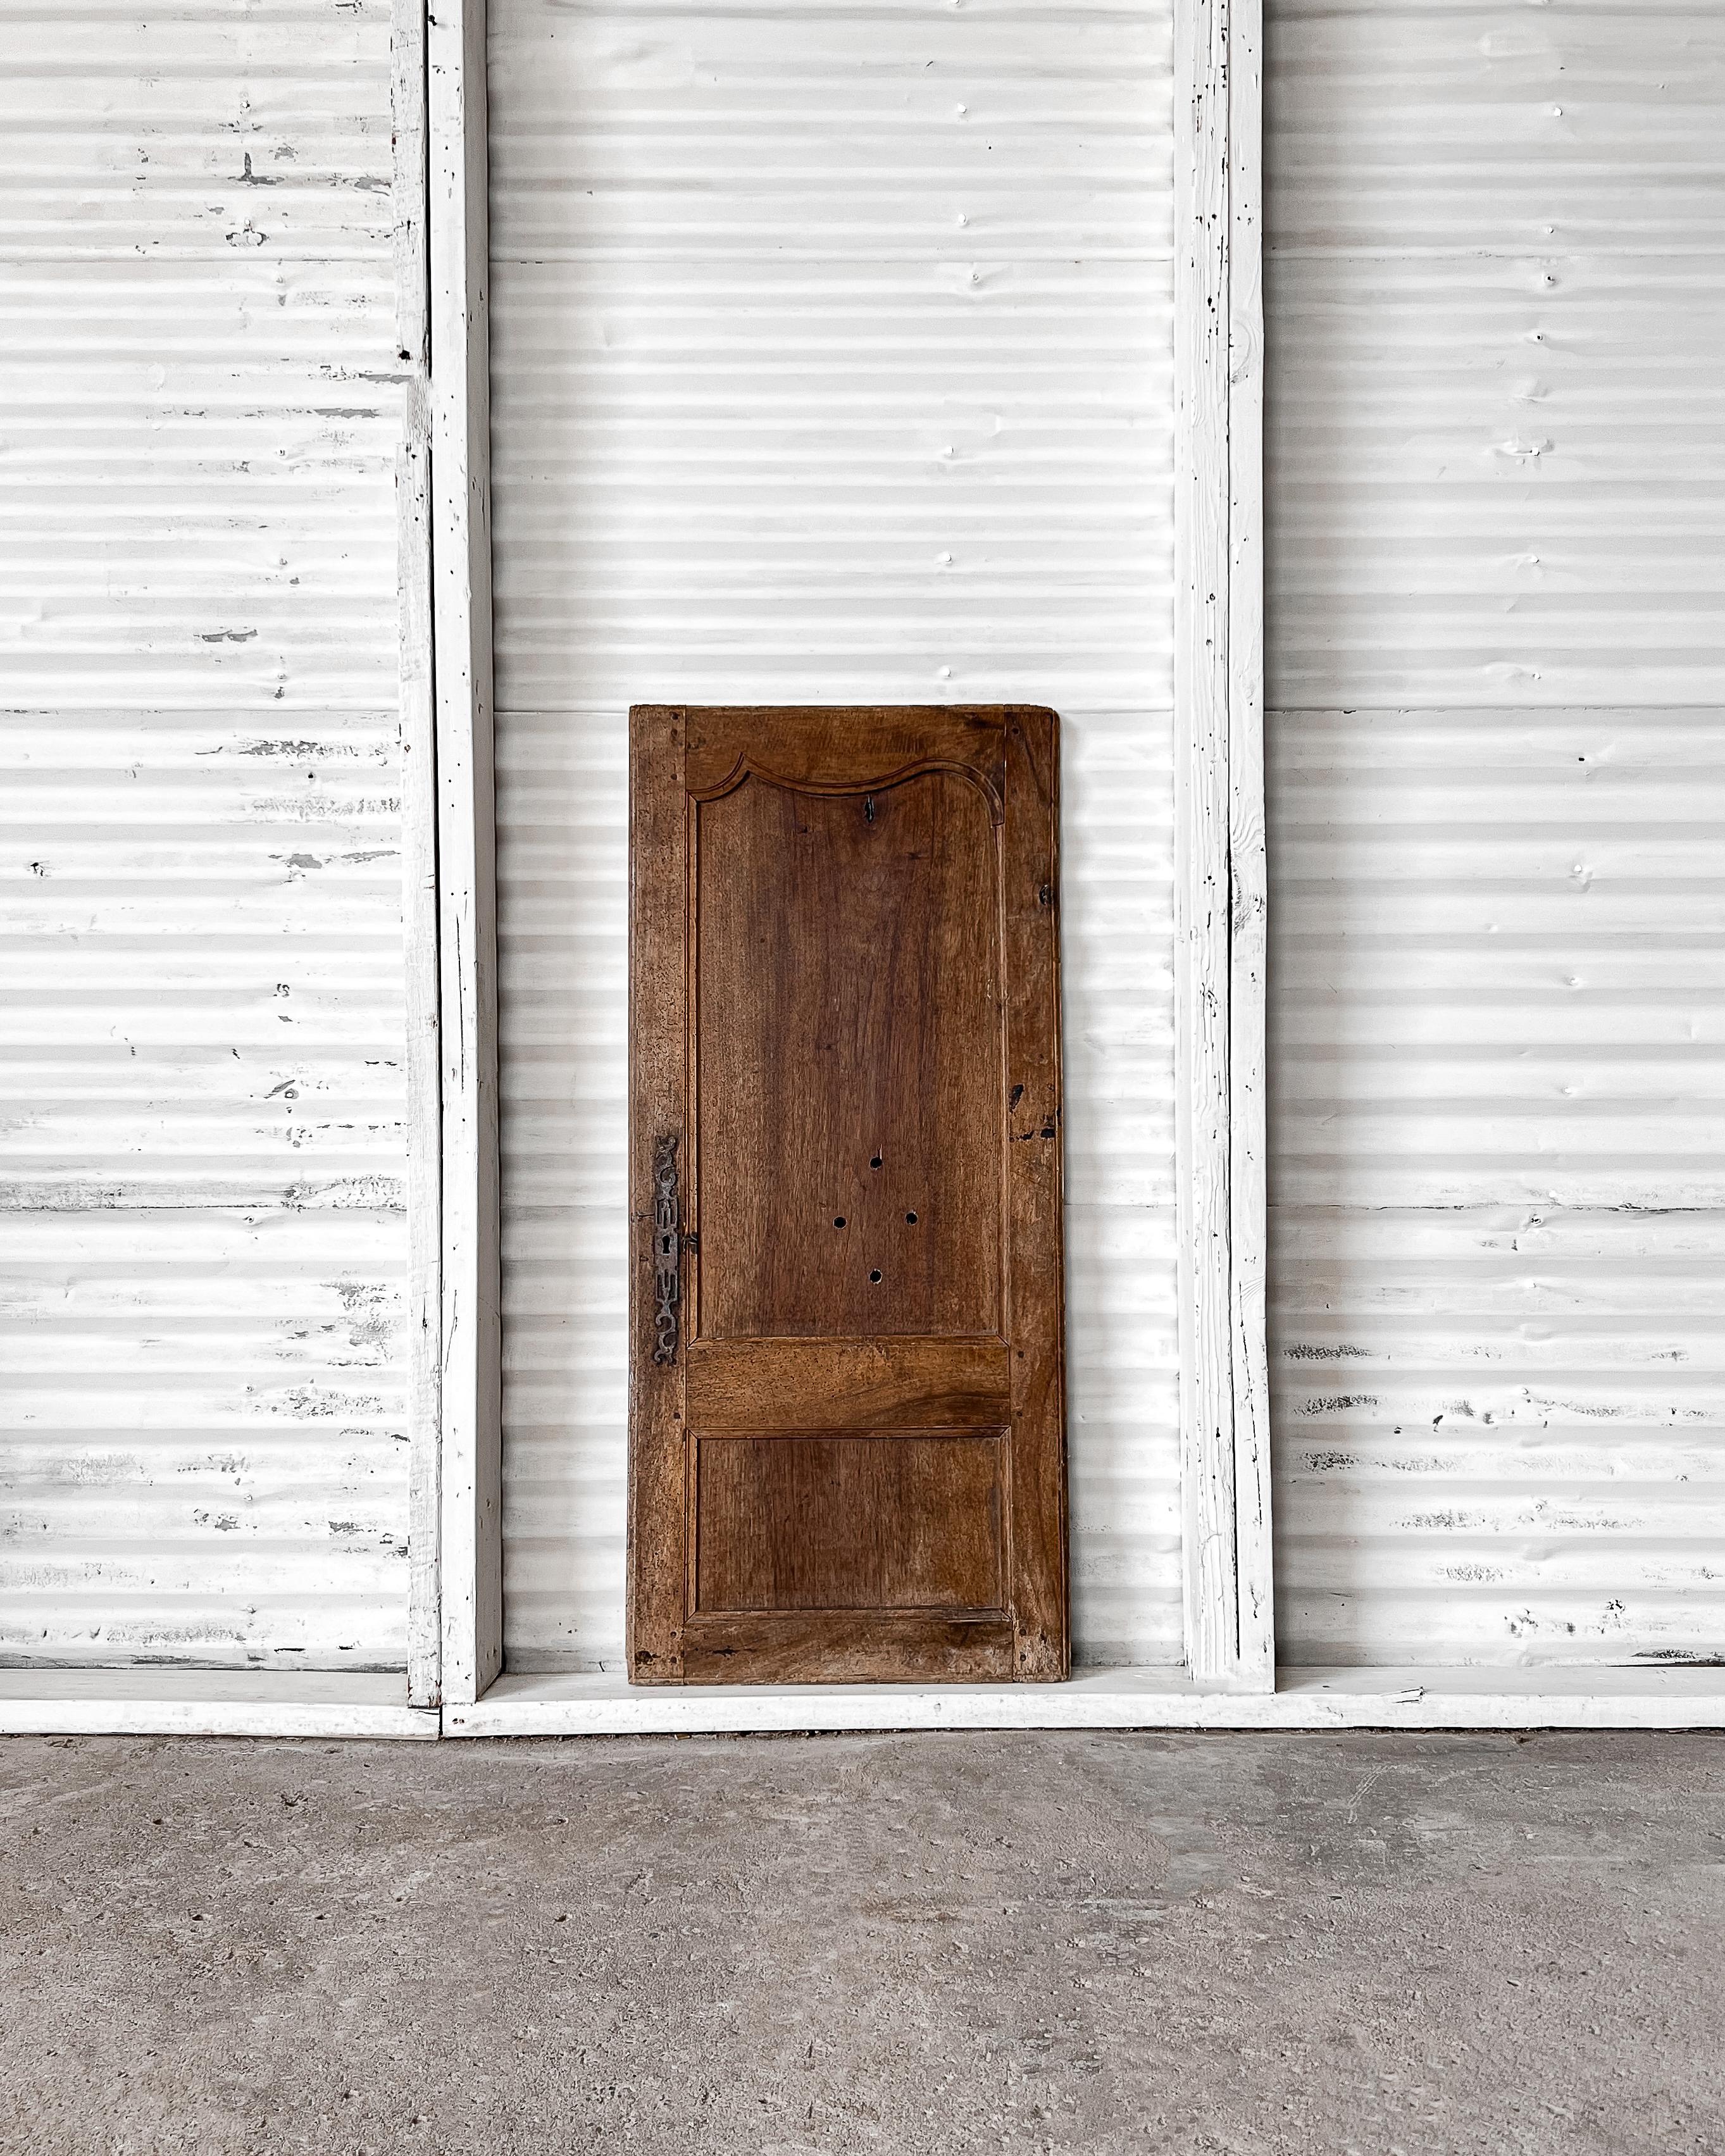 Eine einzelne Schranktür aus der Provinz mit geschnitzten Details. Schließen Sie einen Einbauschrank mit dieser charmanten Tür ab und fühlen Sie sich in die französische Landschaft versetzt.

In Frankreich geborgen, 19. Jahrhundert.

Gefertigt aus